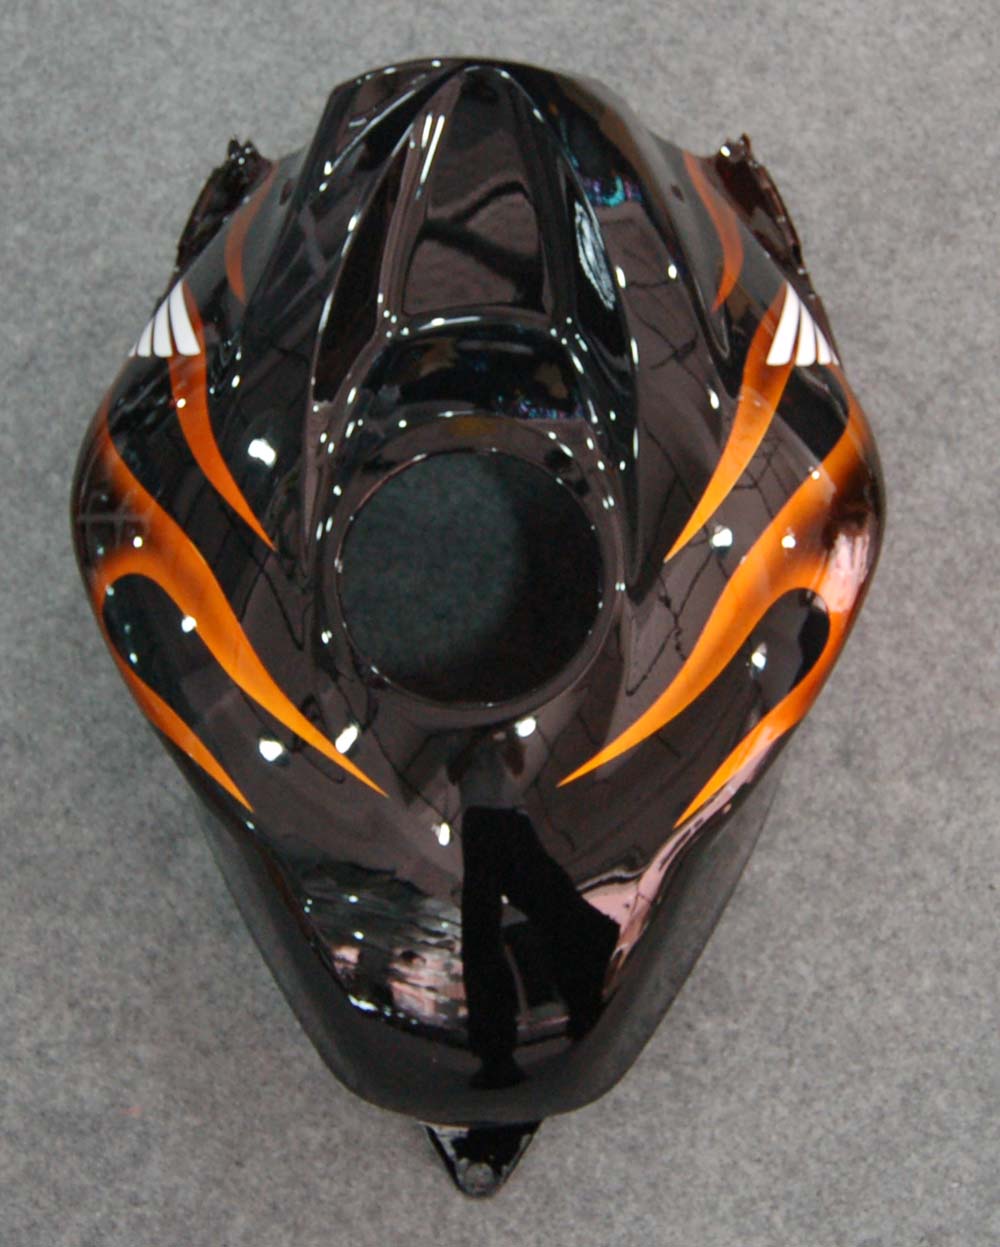 Amotopart 2007-2008 Honda CBR600RR Orange&Black Fairing Kit